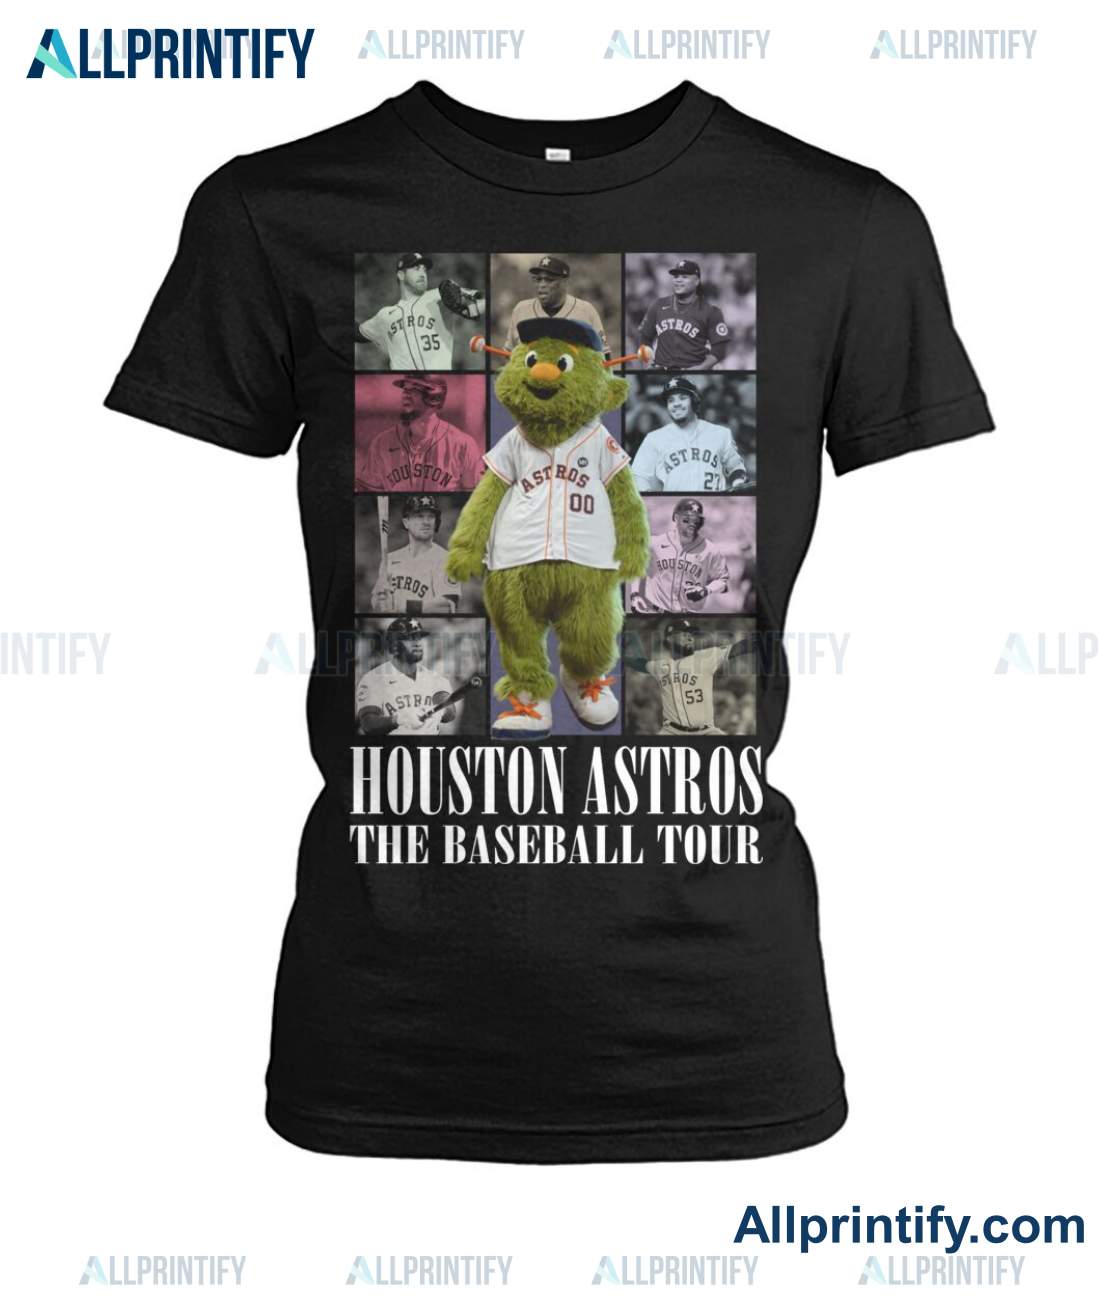 Houston Astros The Baseball Tour Shirt x